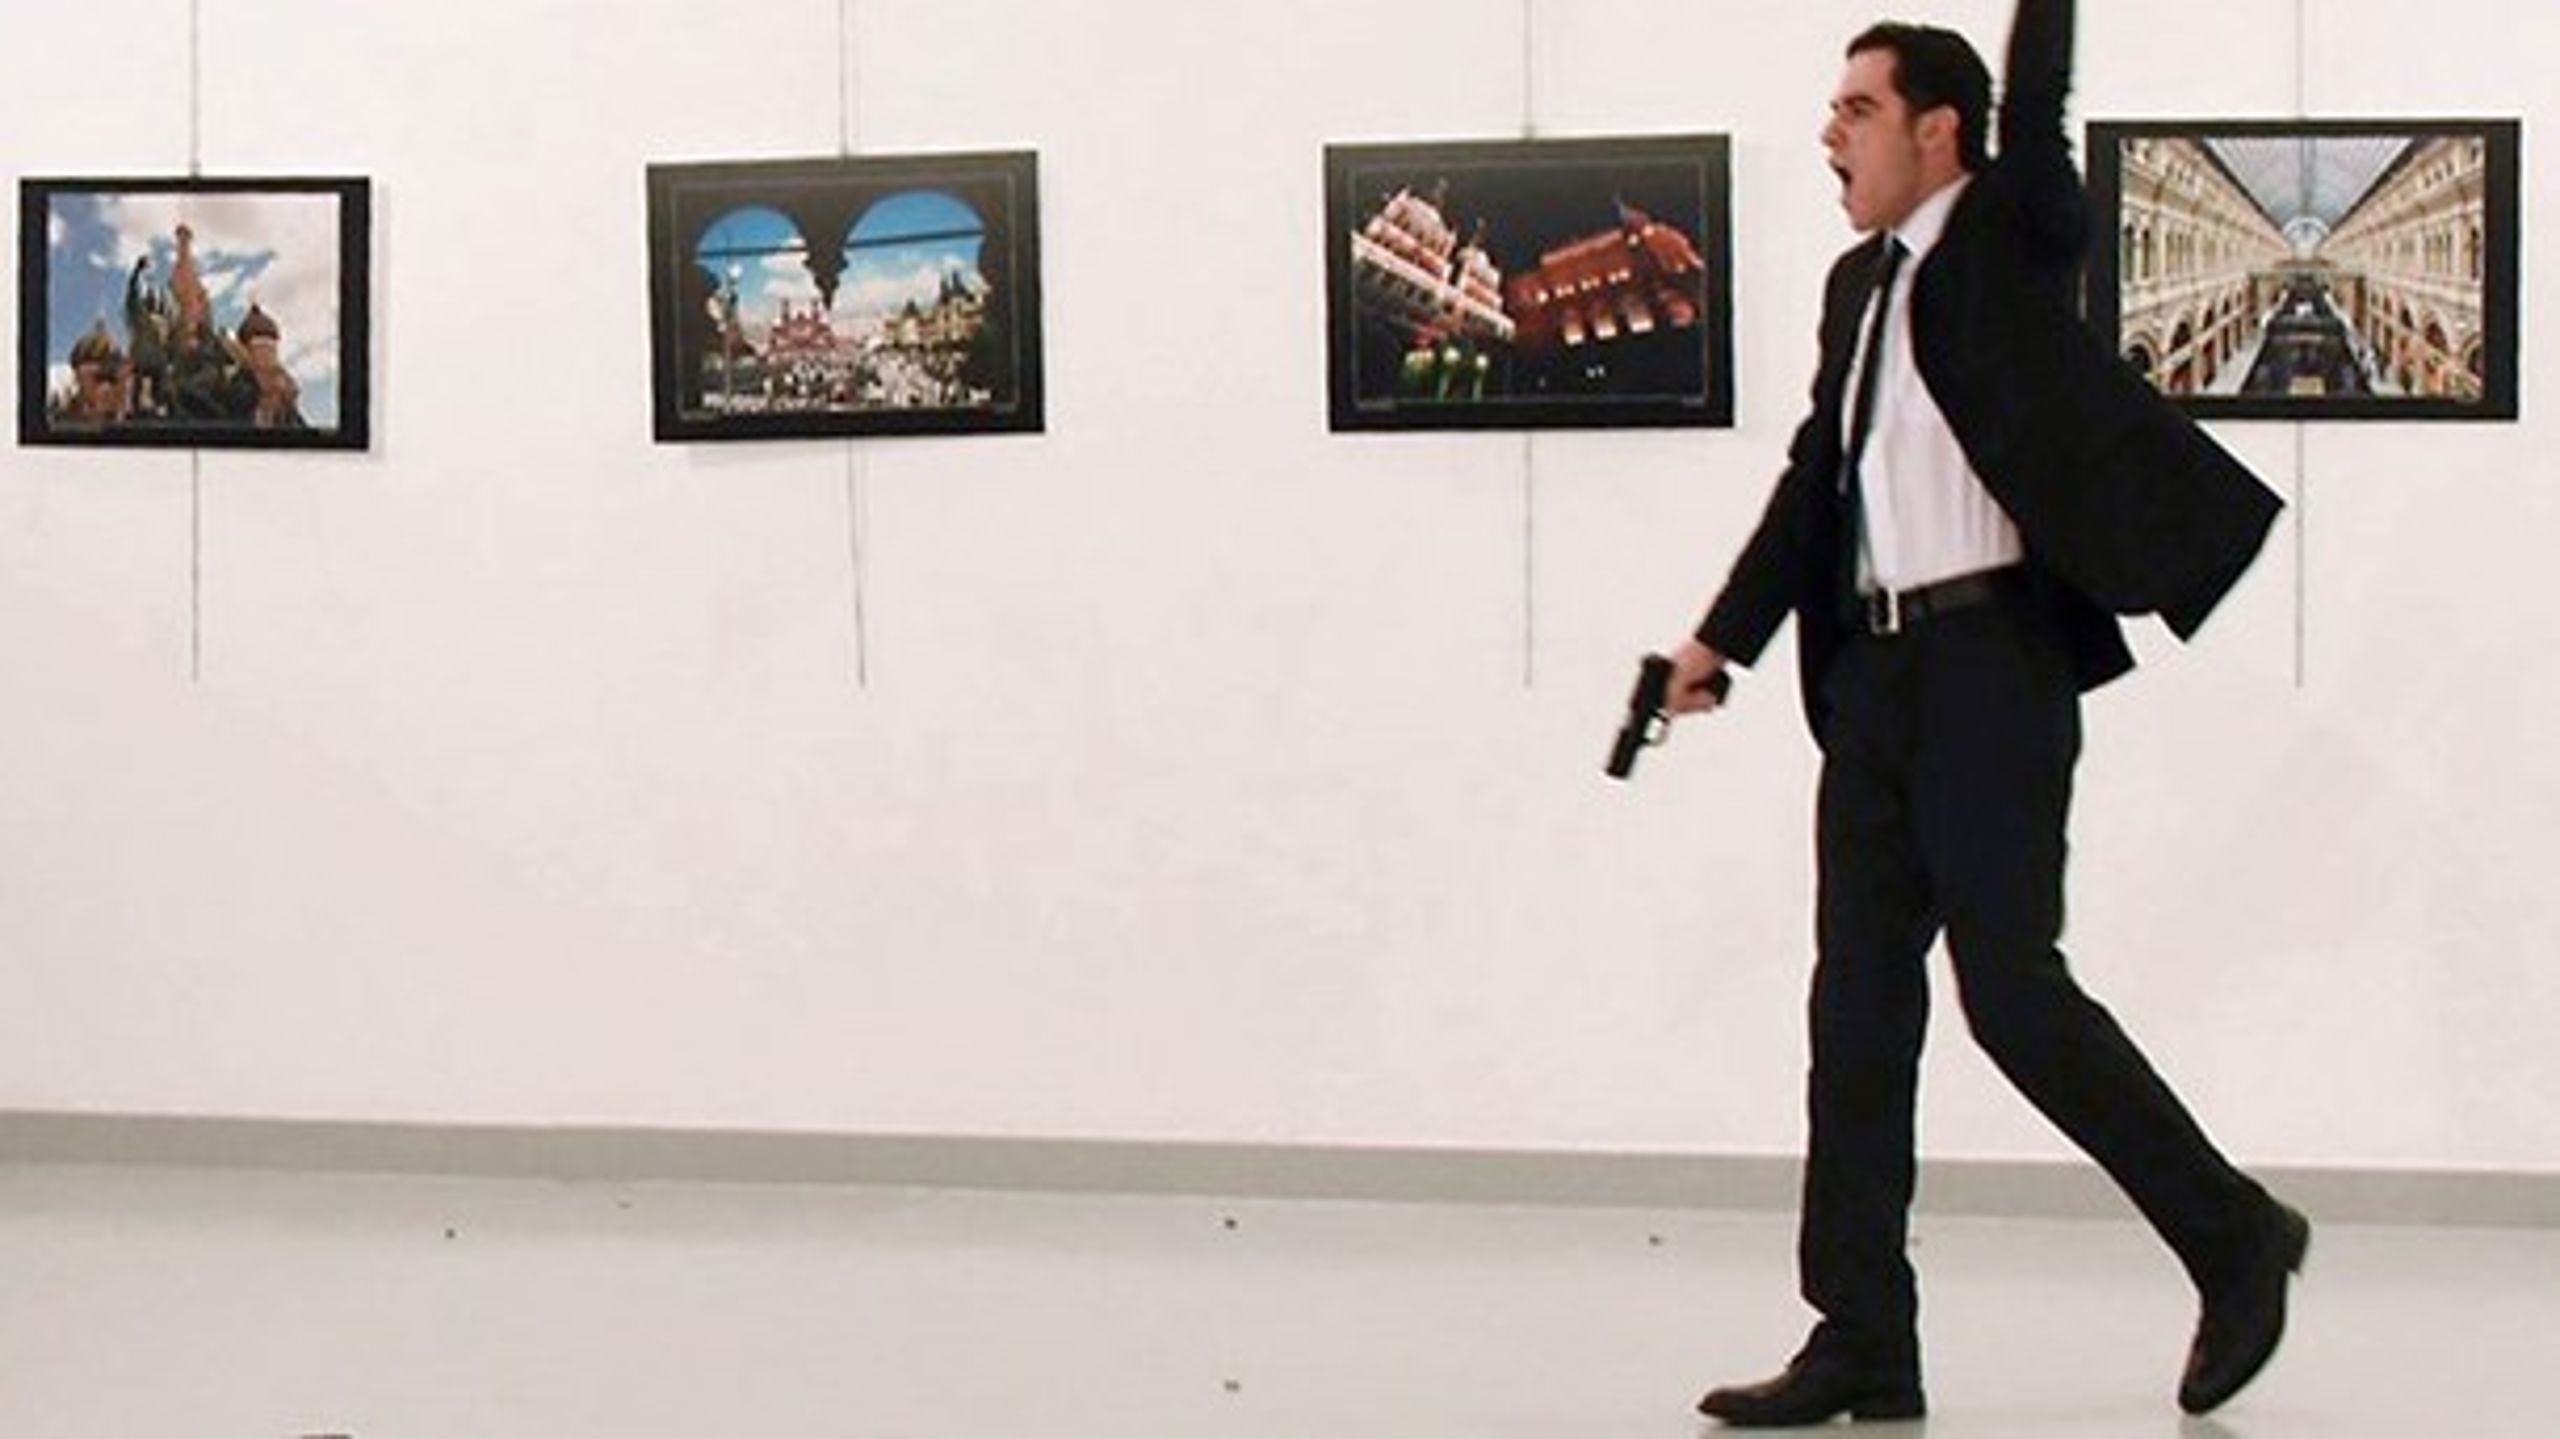 Ruslands ambassadør i Tyrkiet, Andrej Karlov, blev myrdet af den tyrkiske politiofficer, Mevlüt Mert Altinasunder, under&nbsp;åbningen af&nbsp;en fotoudstilling i Ankara.